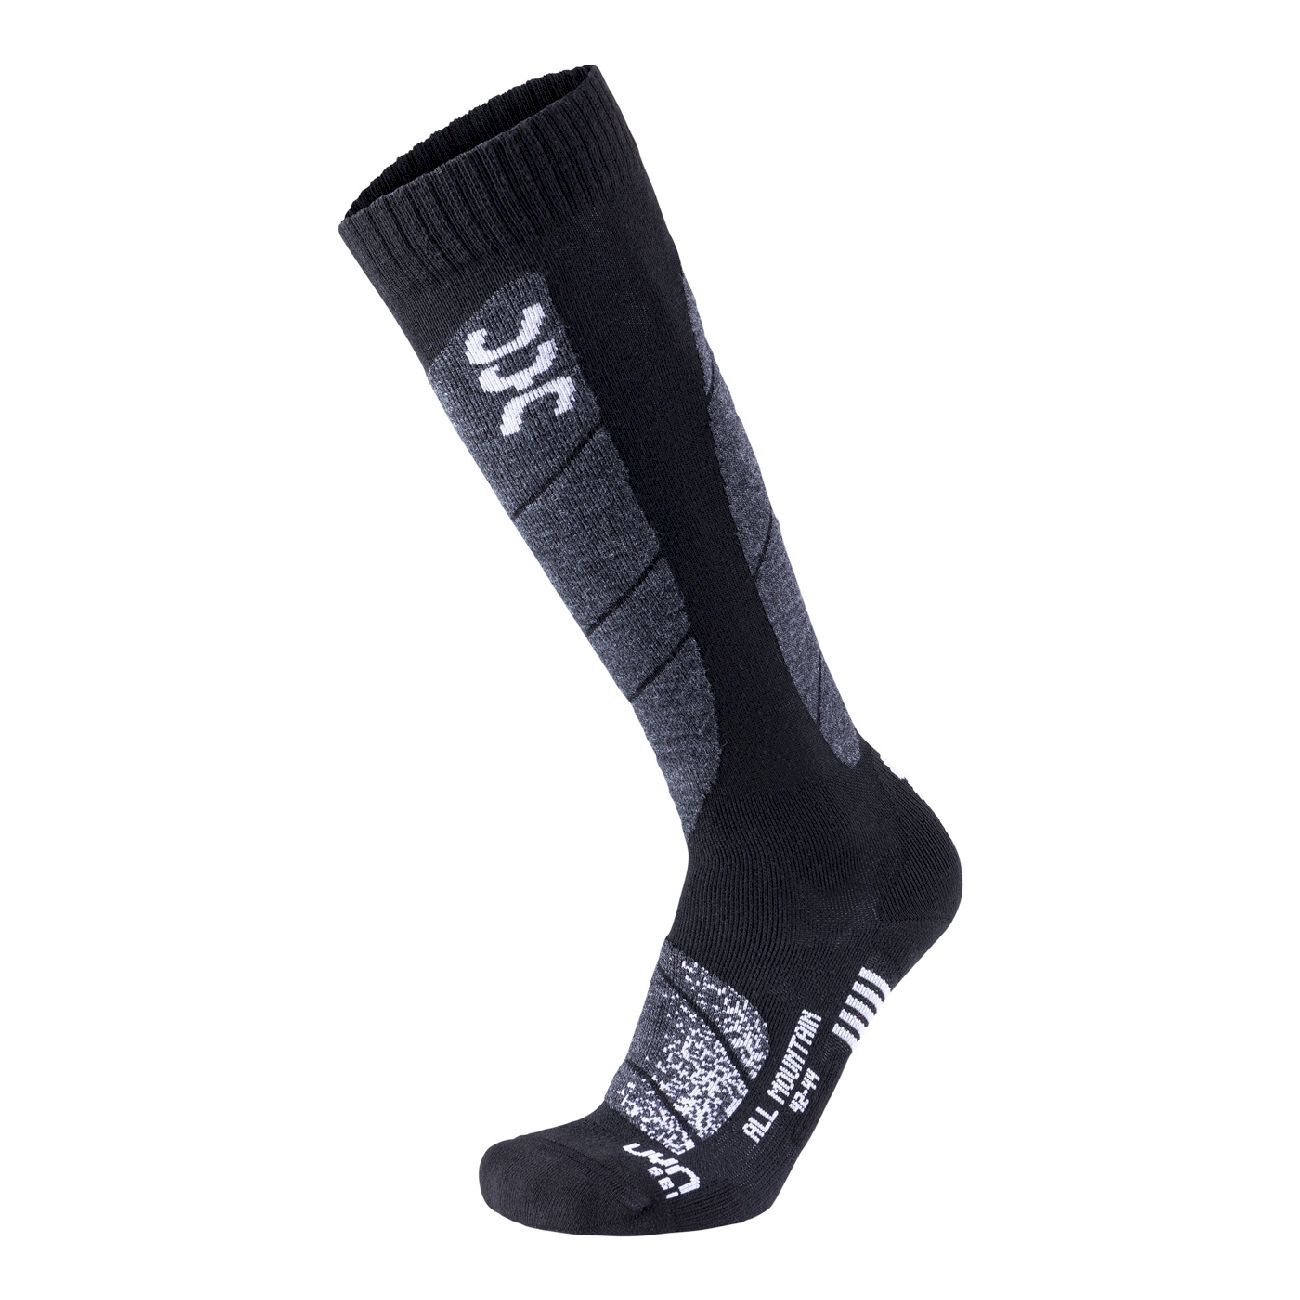 Uyn All Mountain - Ski socks - Men's